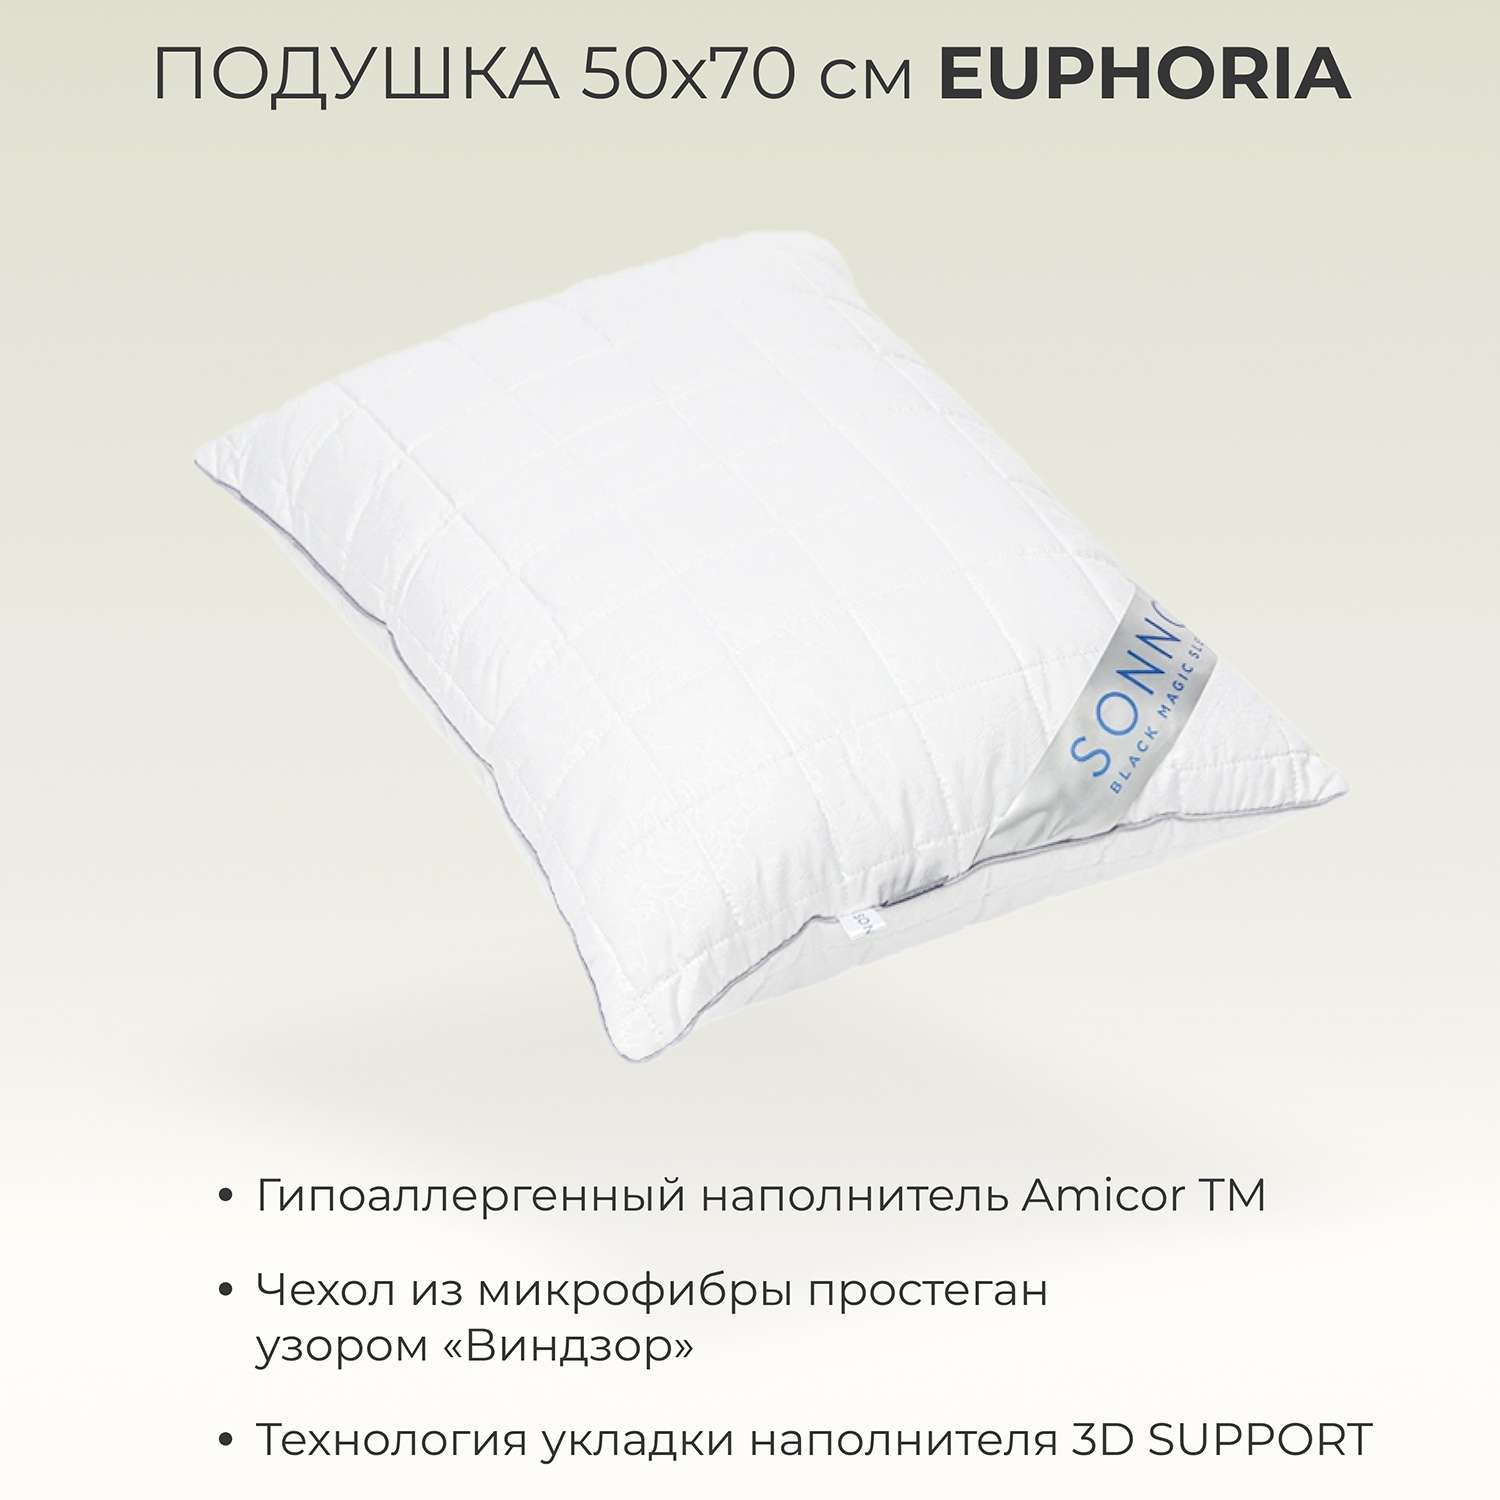 Подушка SONNO EUPHORIA 50x70 см гипоаллергенный наполнитель Amicor TM - фото 2